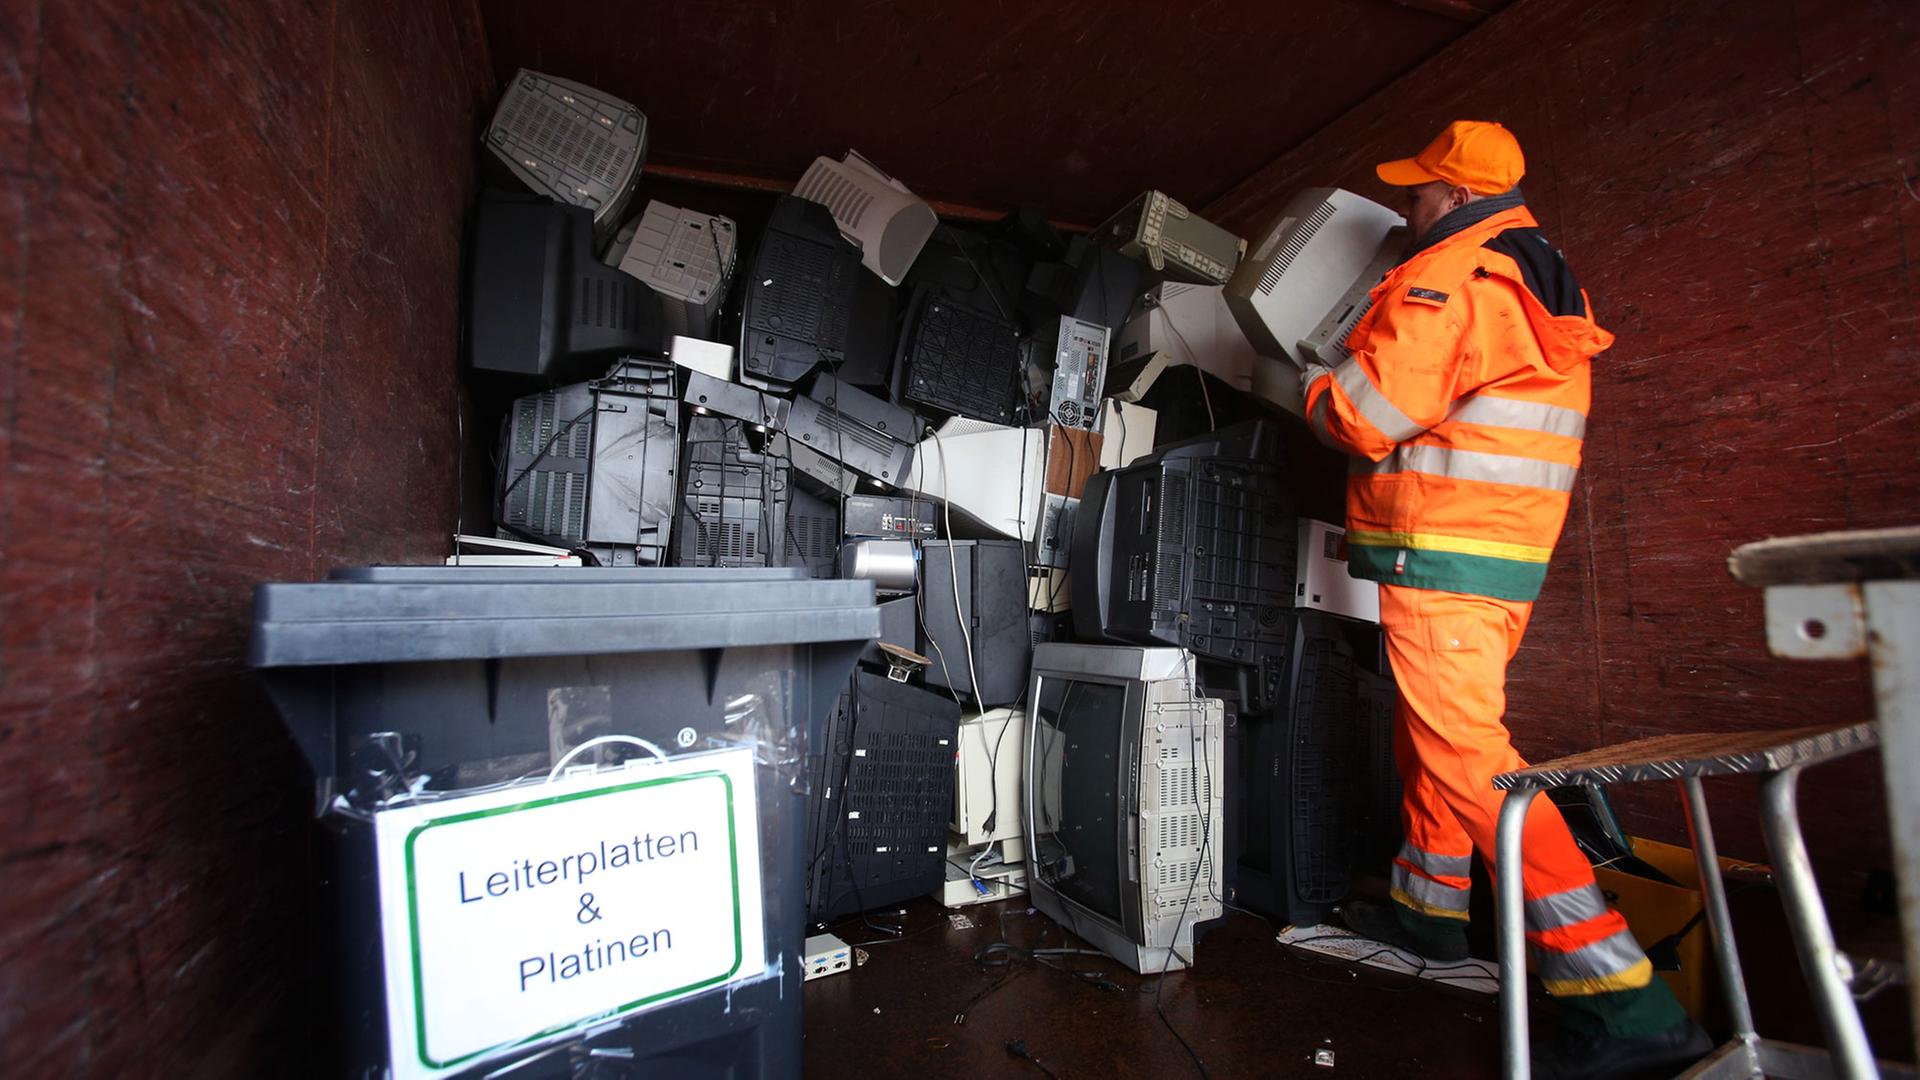 Ein Mitarbeiter der Hamburger Stadtreinigung stapelt am 04.02.2013 ausrangierte Fernseher und Monitore in einem Sammelcontainer für Elektroschrott auf dem Recyclinghof Bahrenfeld in Hamburg.